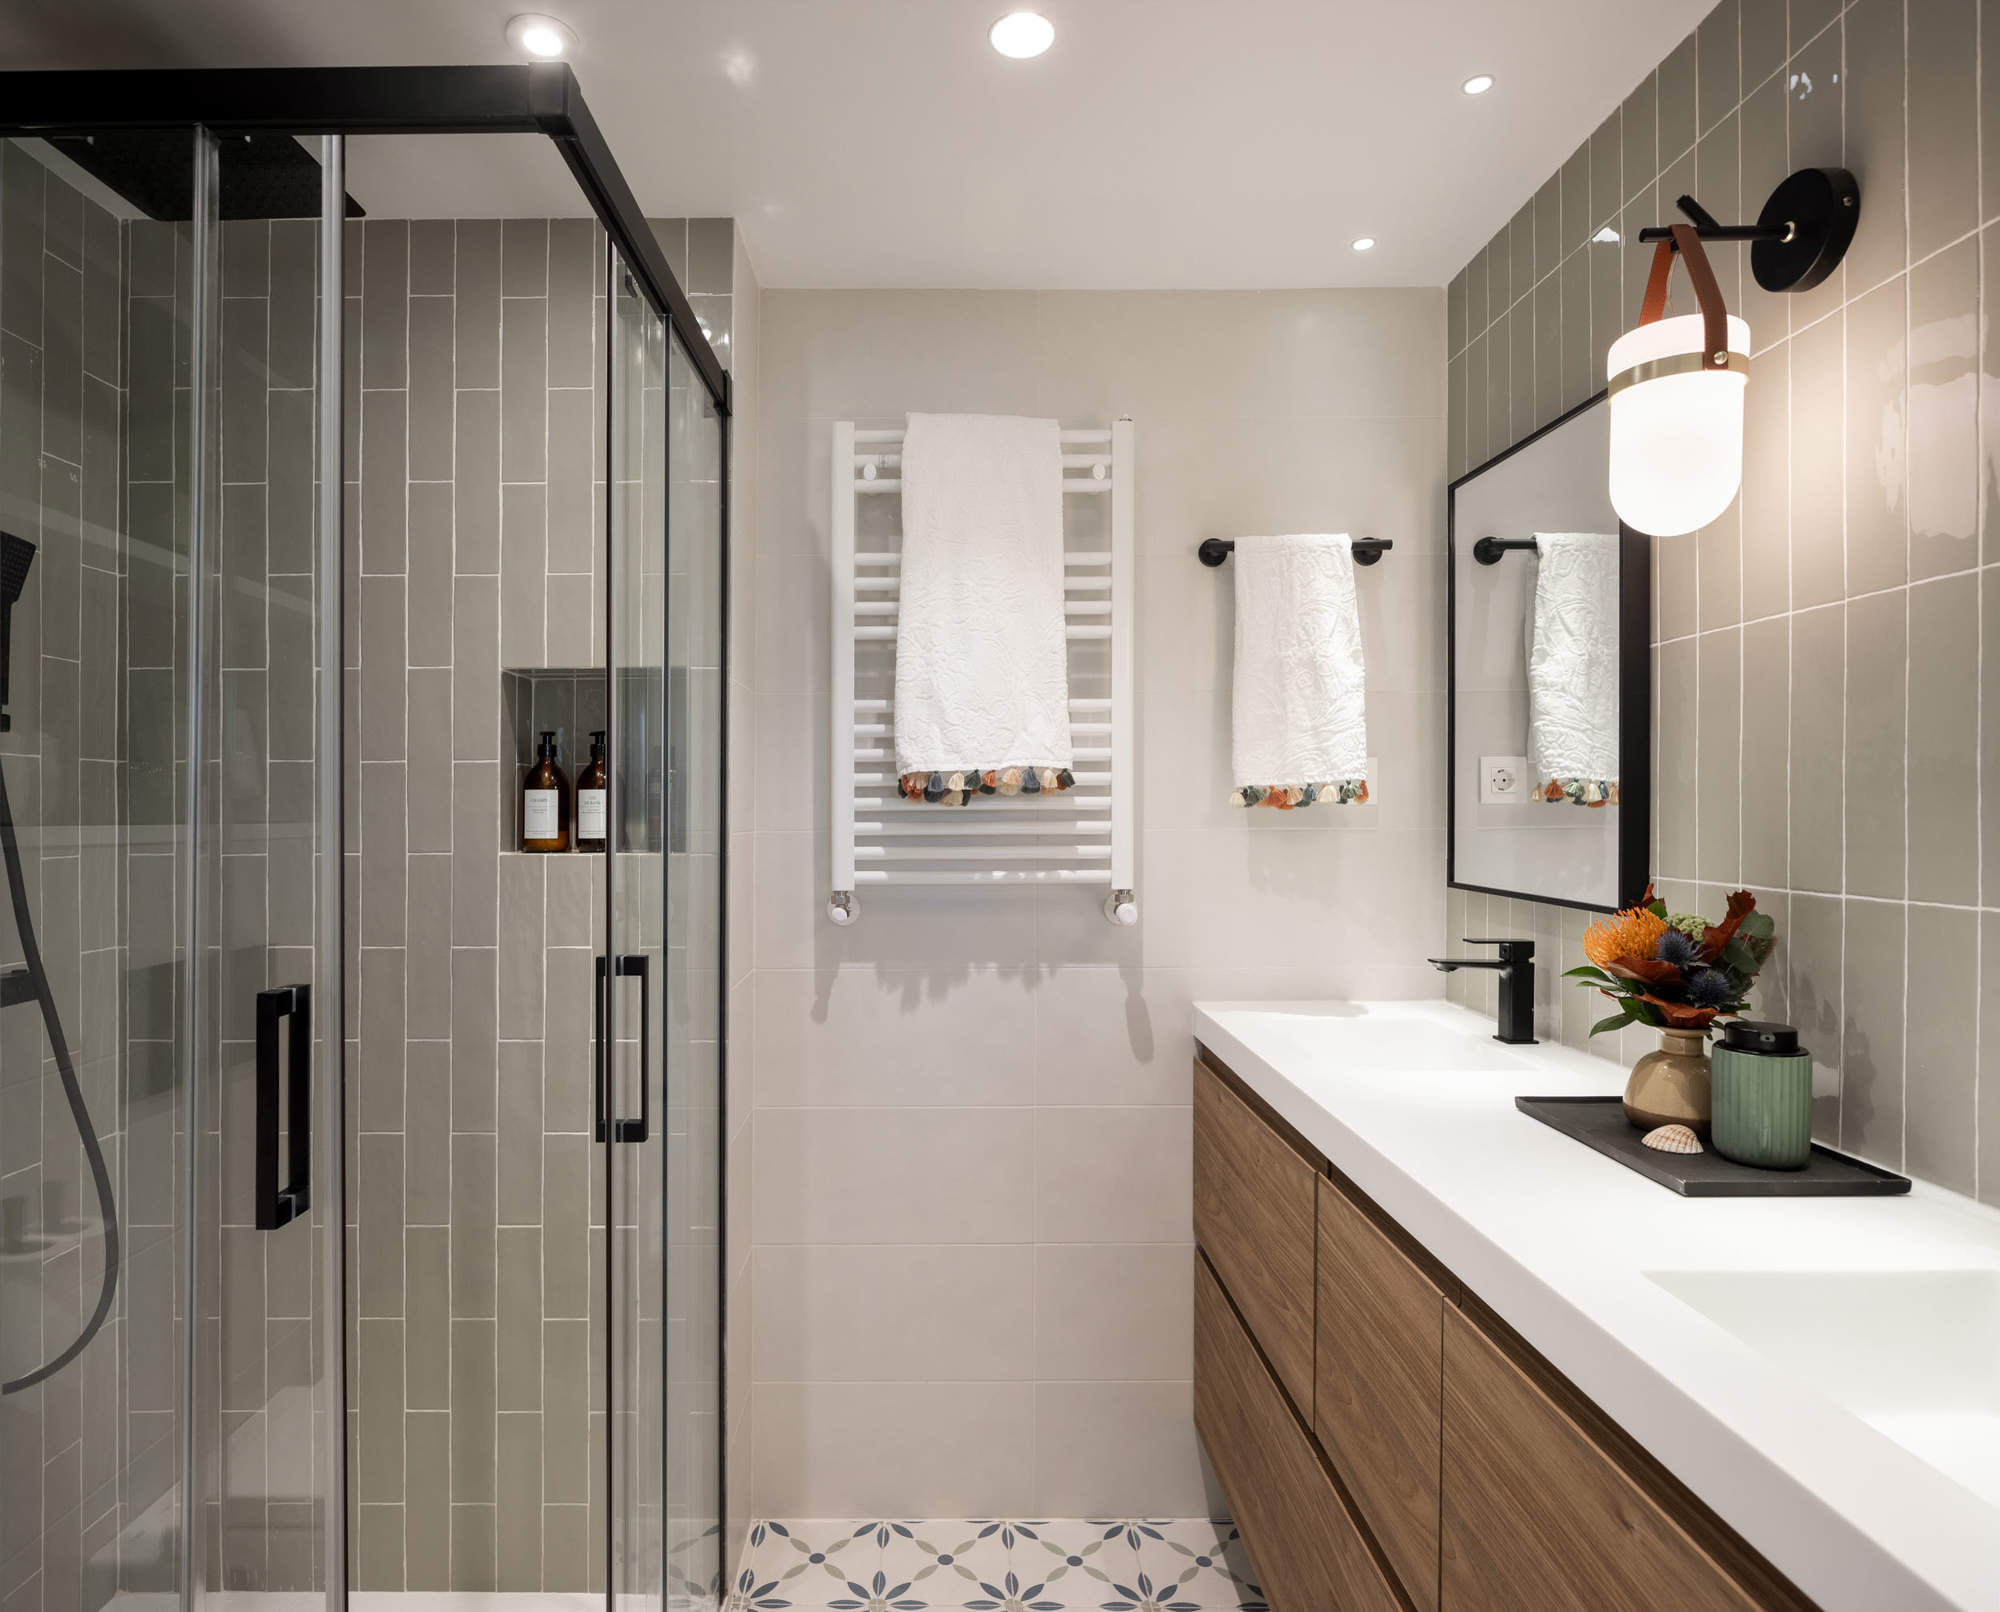 Baño con ducha con perfilería negra, mueble de madera, azulejos con flores en el suelo y azulejos verdosos en la pared.